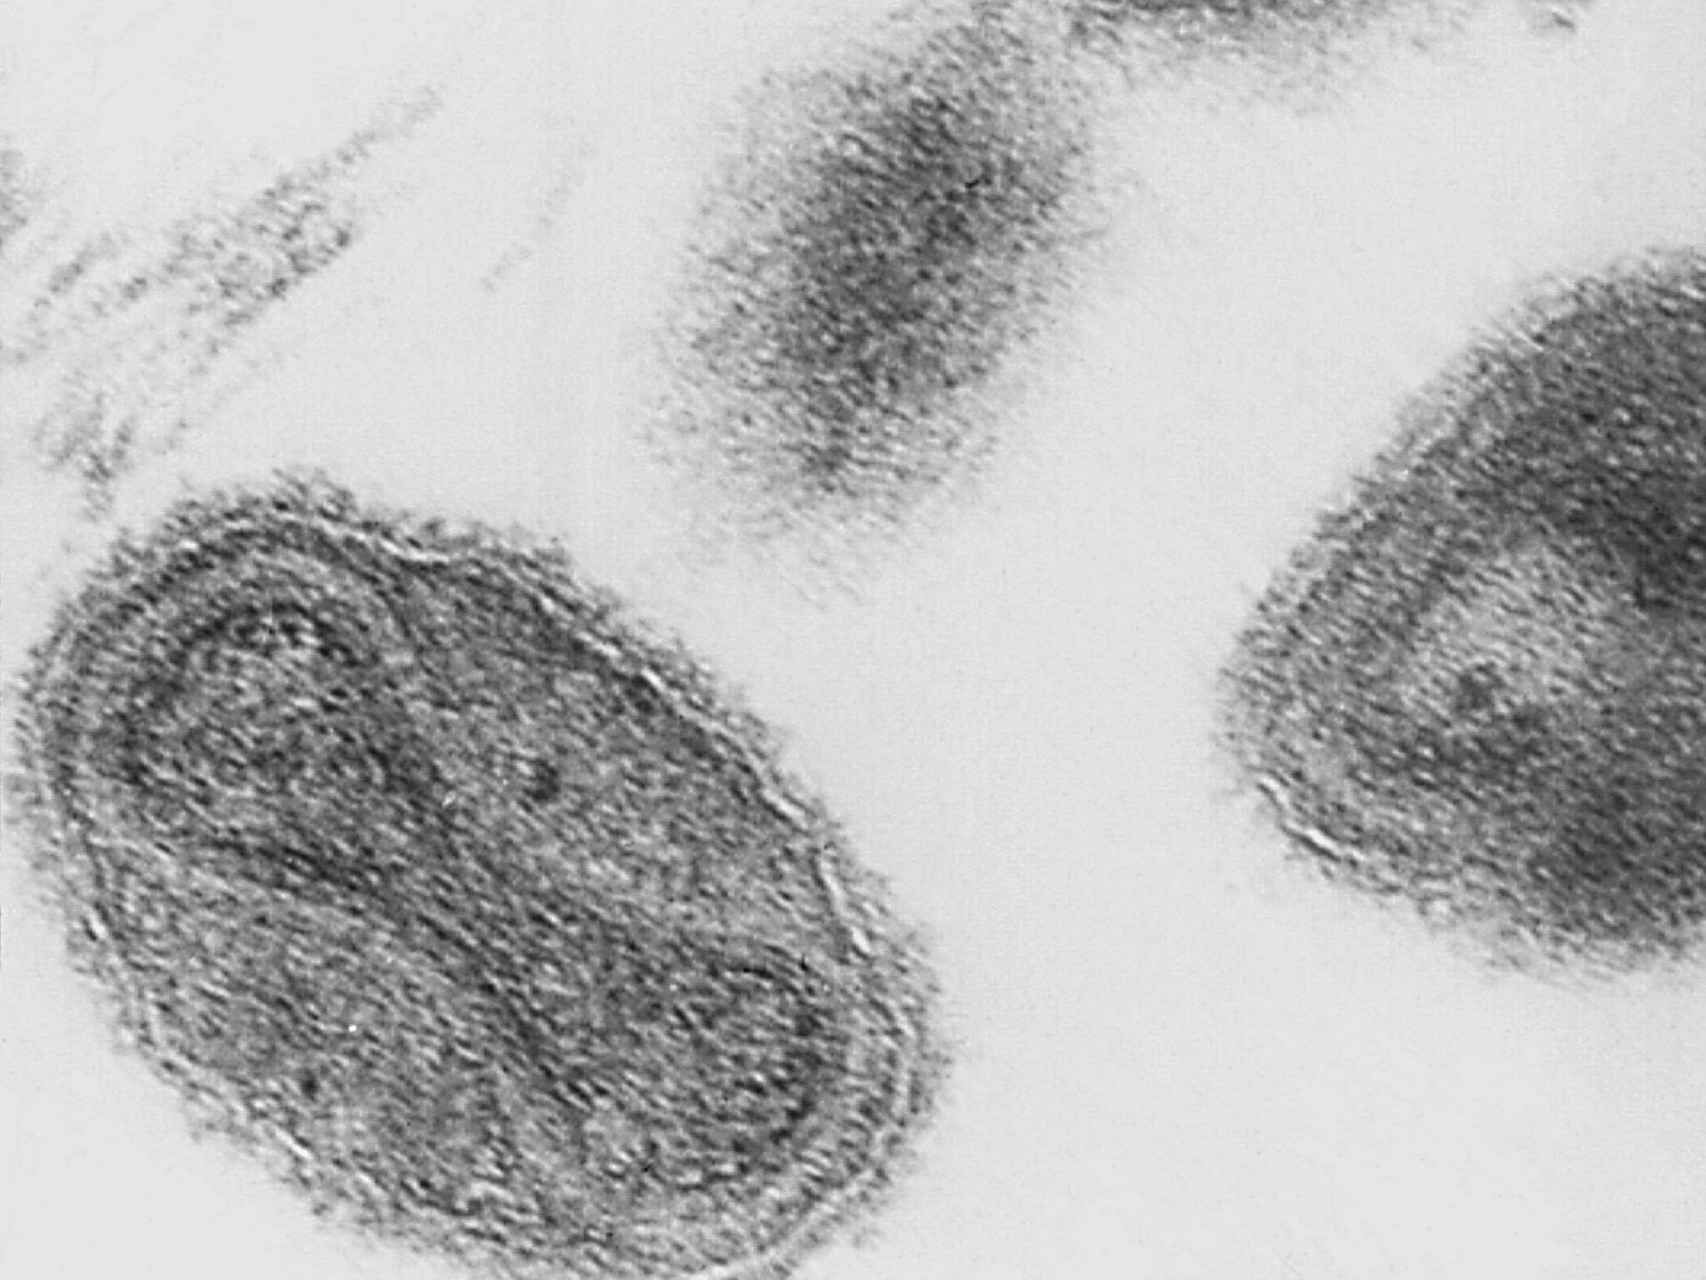 Micrografía electronica del virus de la viruela.